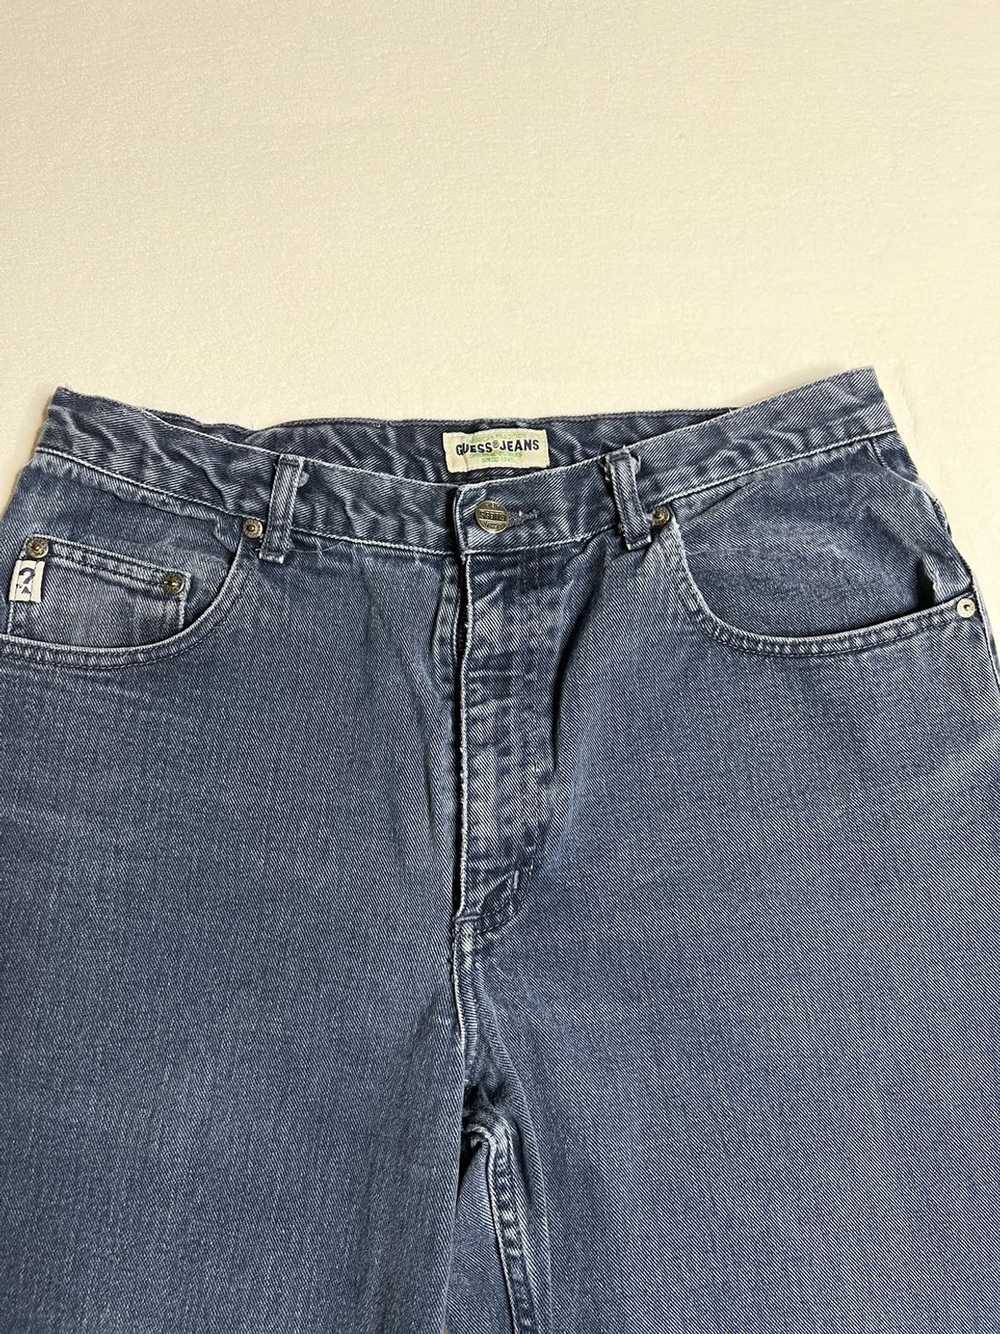 Guess Vintage Guess Denim Pants - image 3